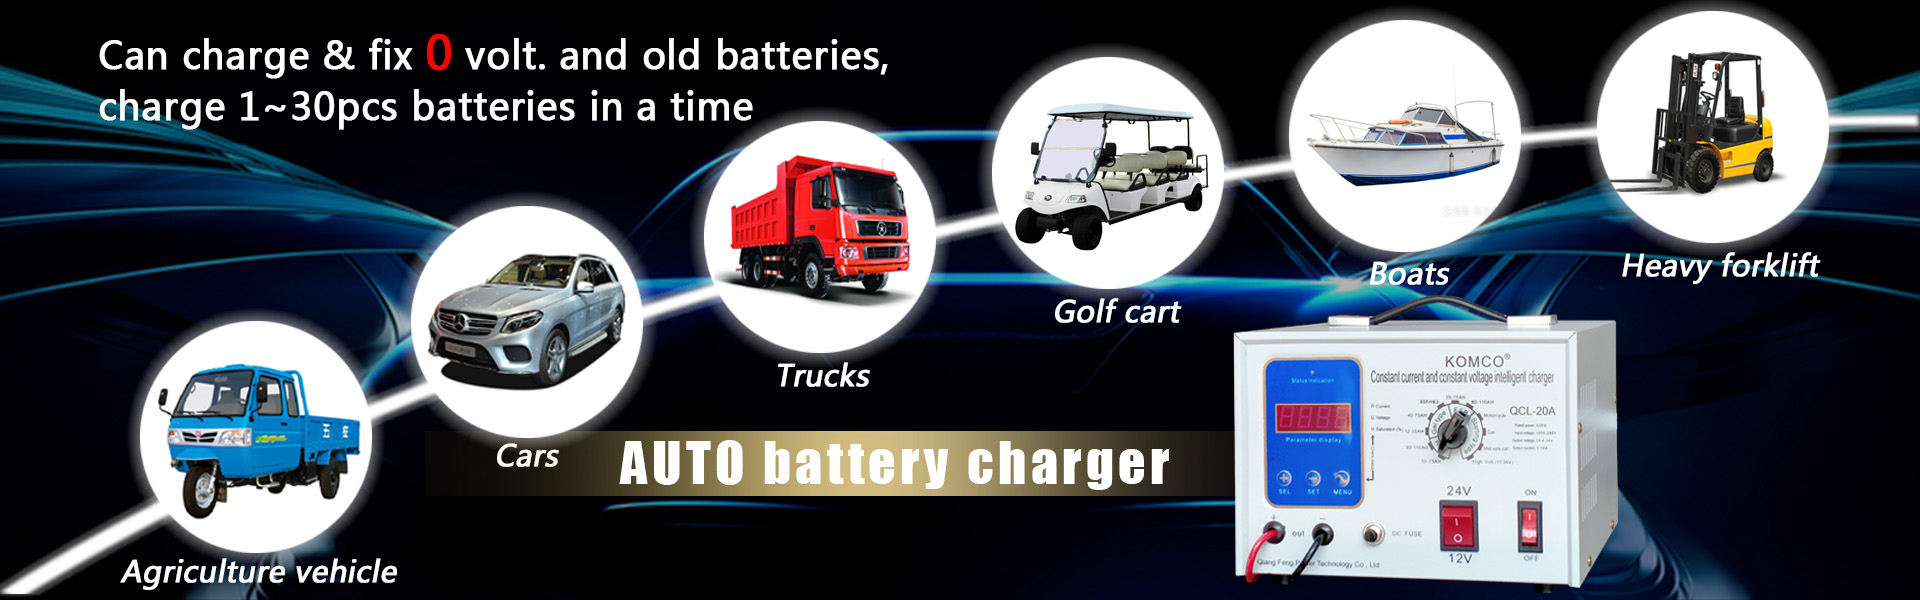 Carregador de bateria de carro, carregador de bateria Auto, carregador de bateria 12V 24V,Qiangfeng Power Technology Co., Ltd